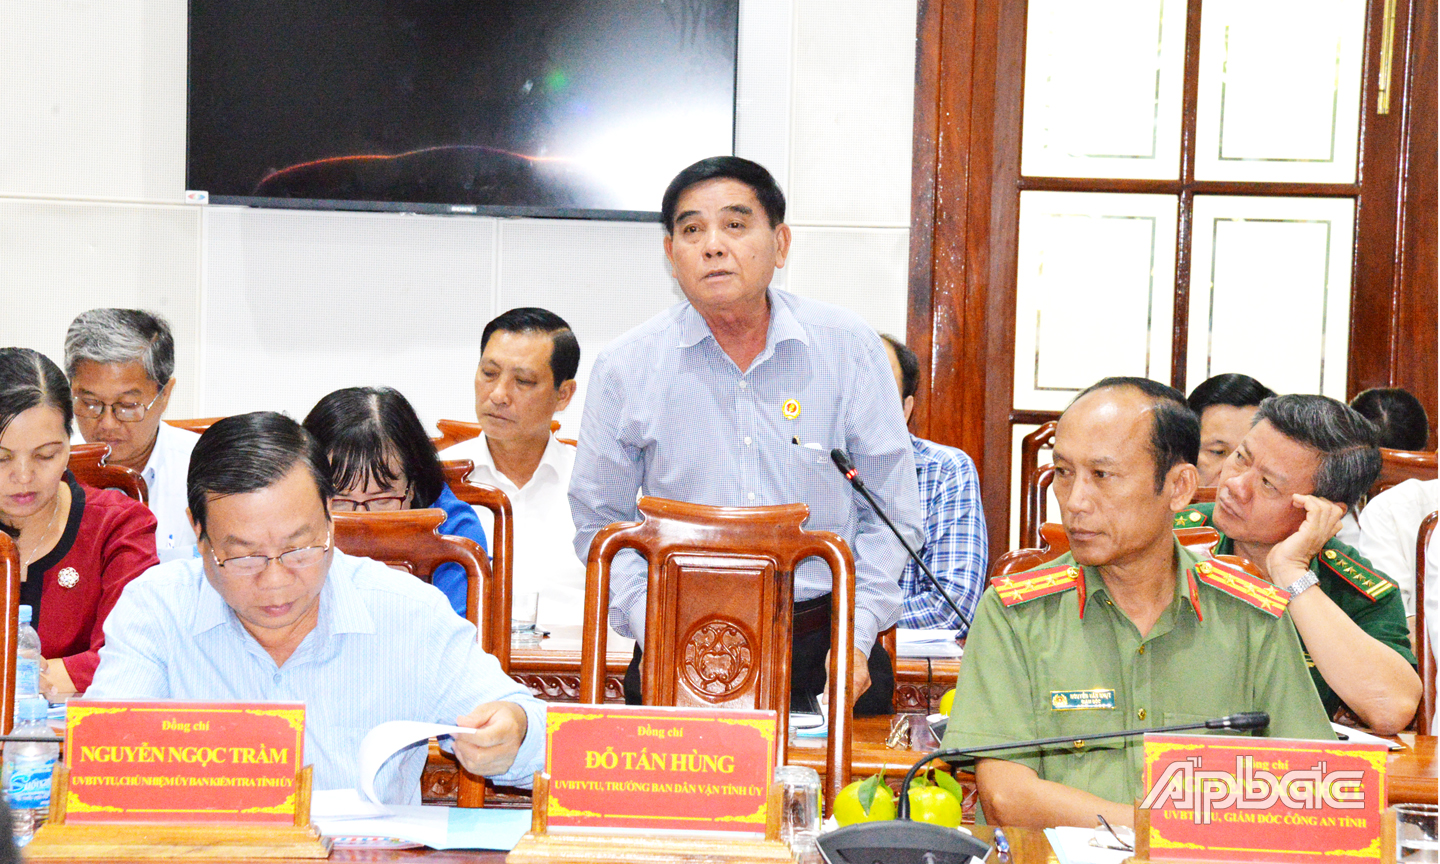 Các thành viên Ủy ban bầu cử tỉnh Tiền Giang trình bày làm sáng tỏ những thắc mắc của thành viên đoàn kiểm tra trung ương